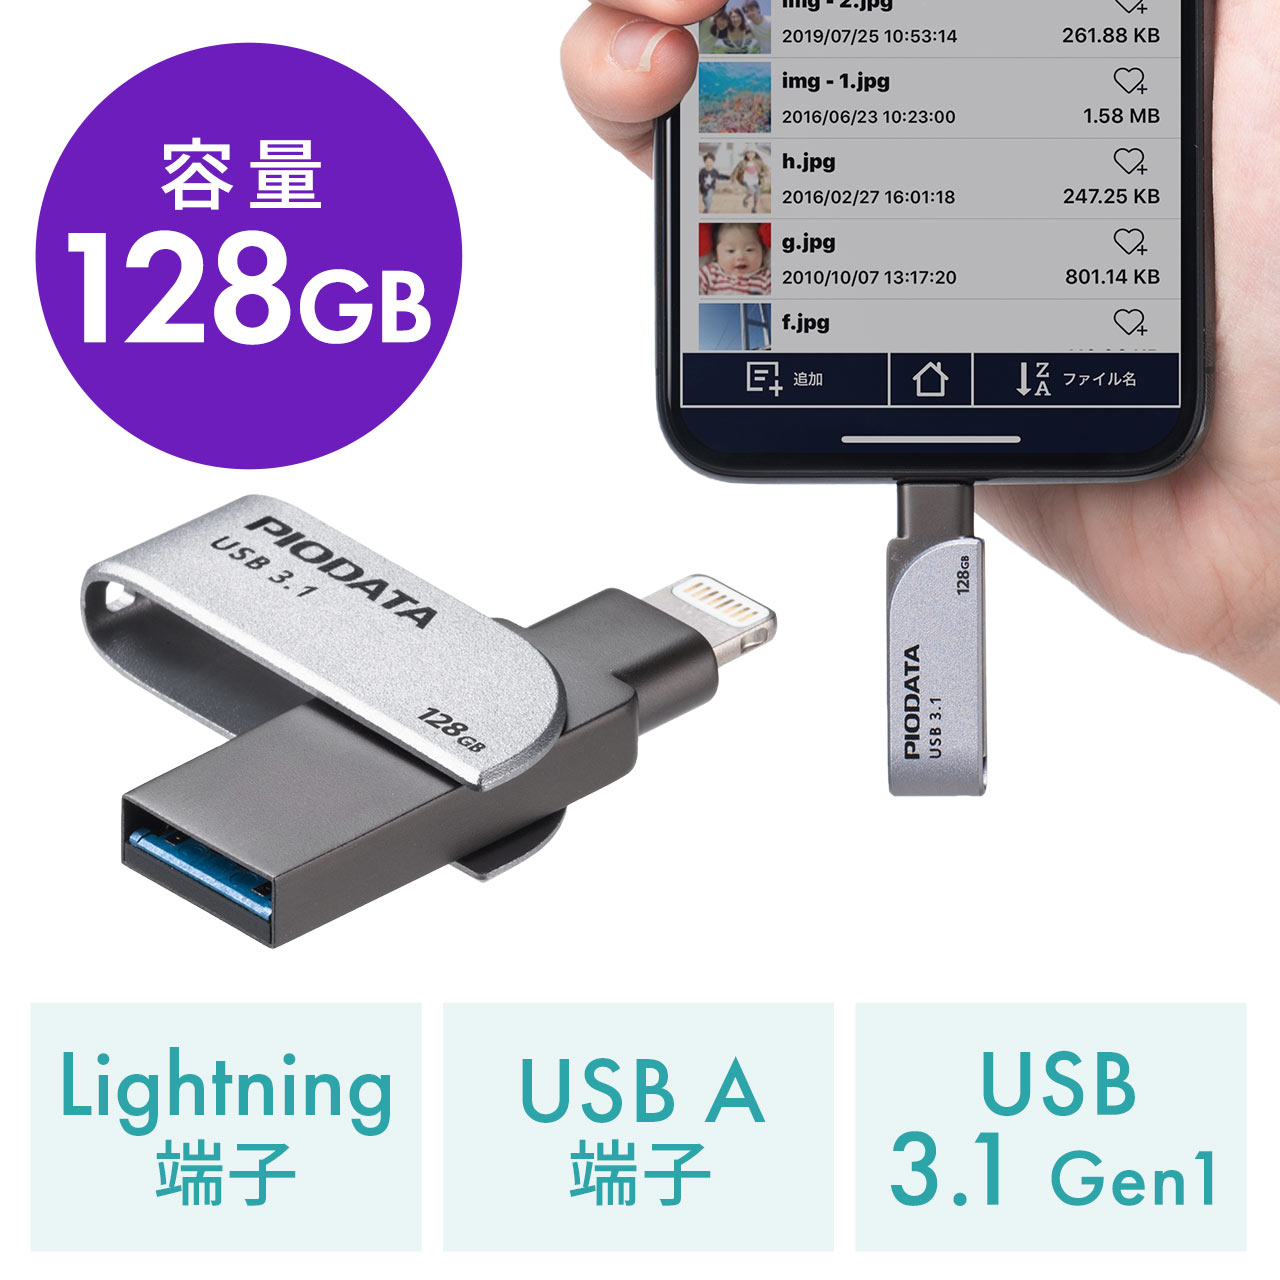 Iphone Ipad Usbメモリ 128gb Usb3 2 Gen1 Usb3 1 3 0 Lightning対応 Mfi認証 スイング式 600 Ipl128gx3の販売商品 通販ならサンワダイレクト